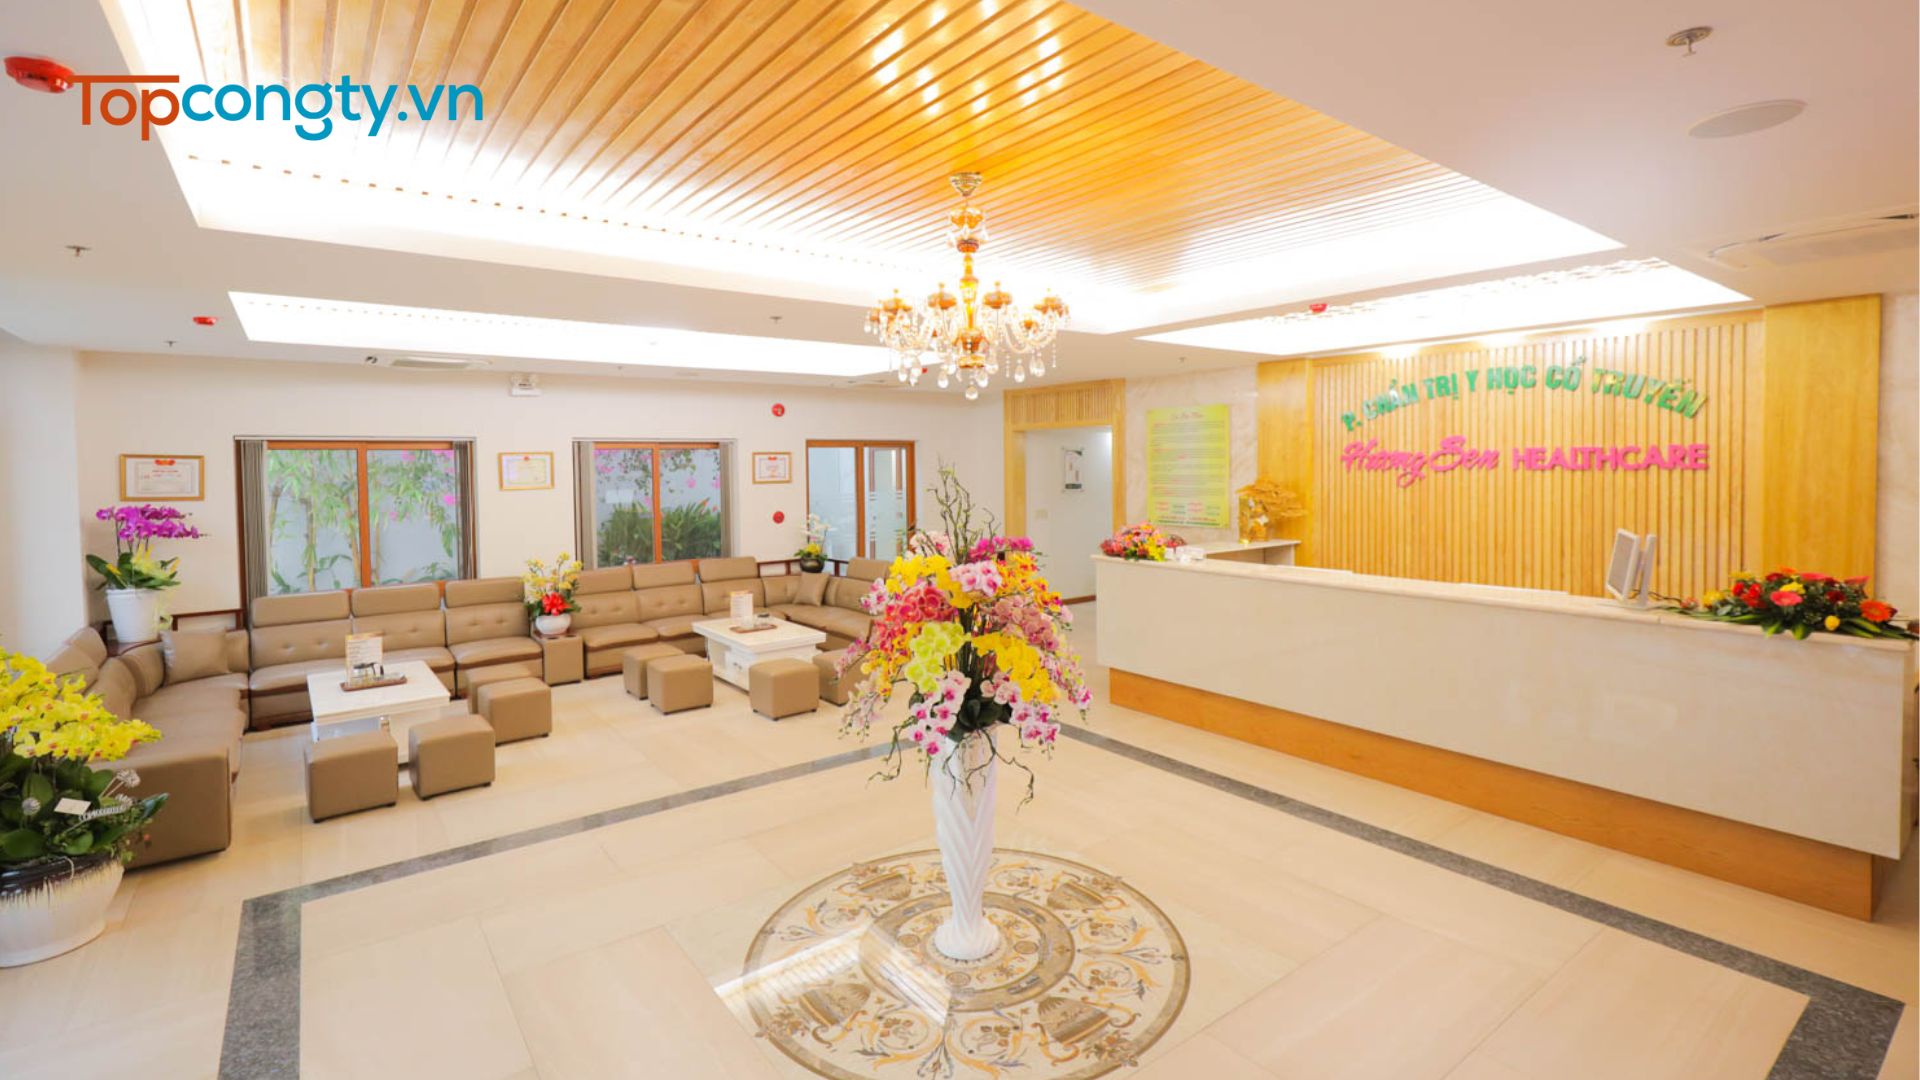 Hương Sen Healthcare Center - Địa chỉ tẩm quất thư giãn ở Hà Nội được yêu thích